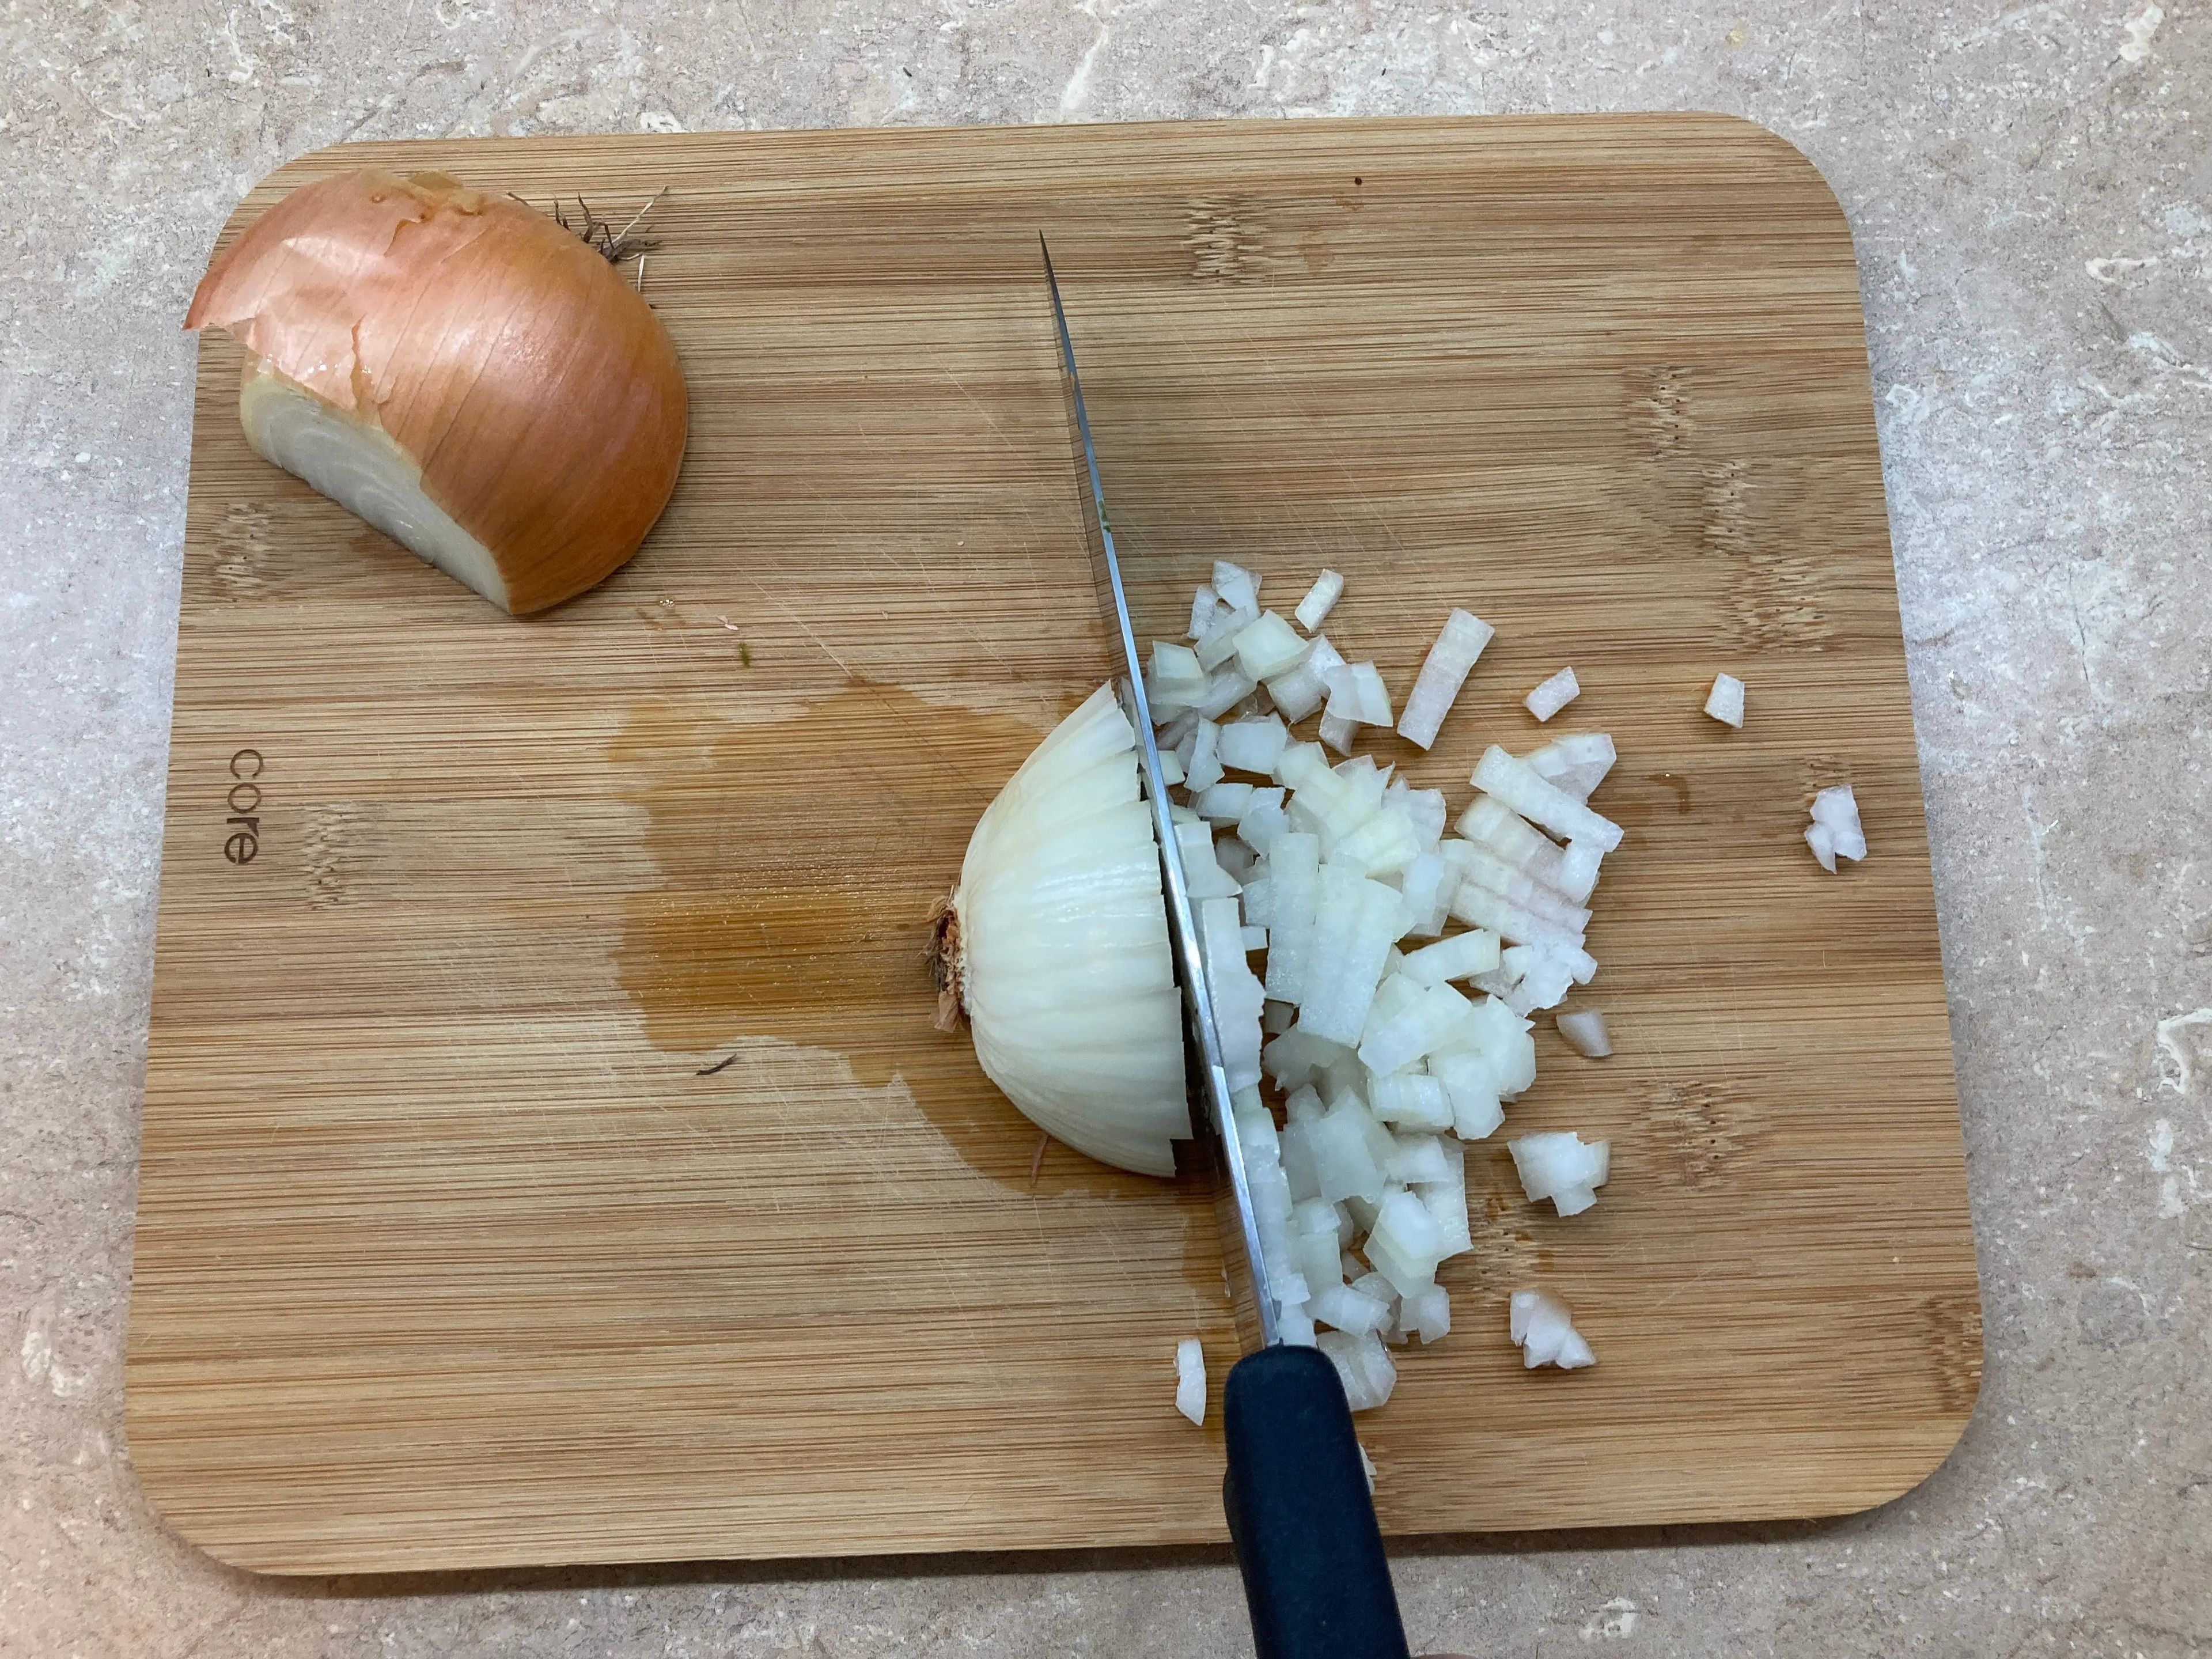 Cortando cebolla.